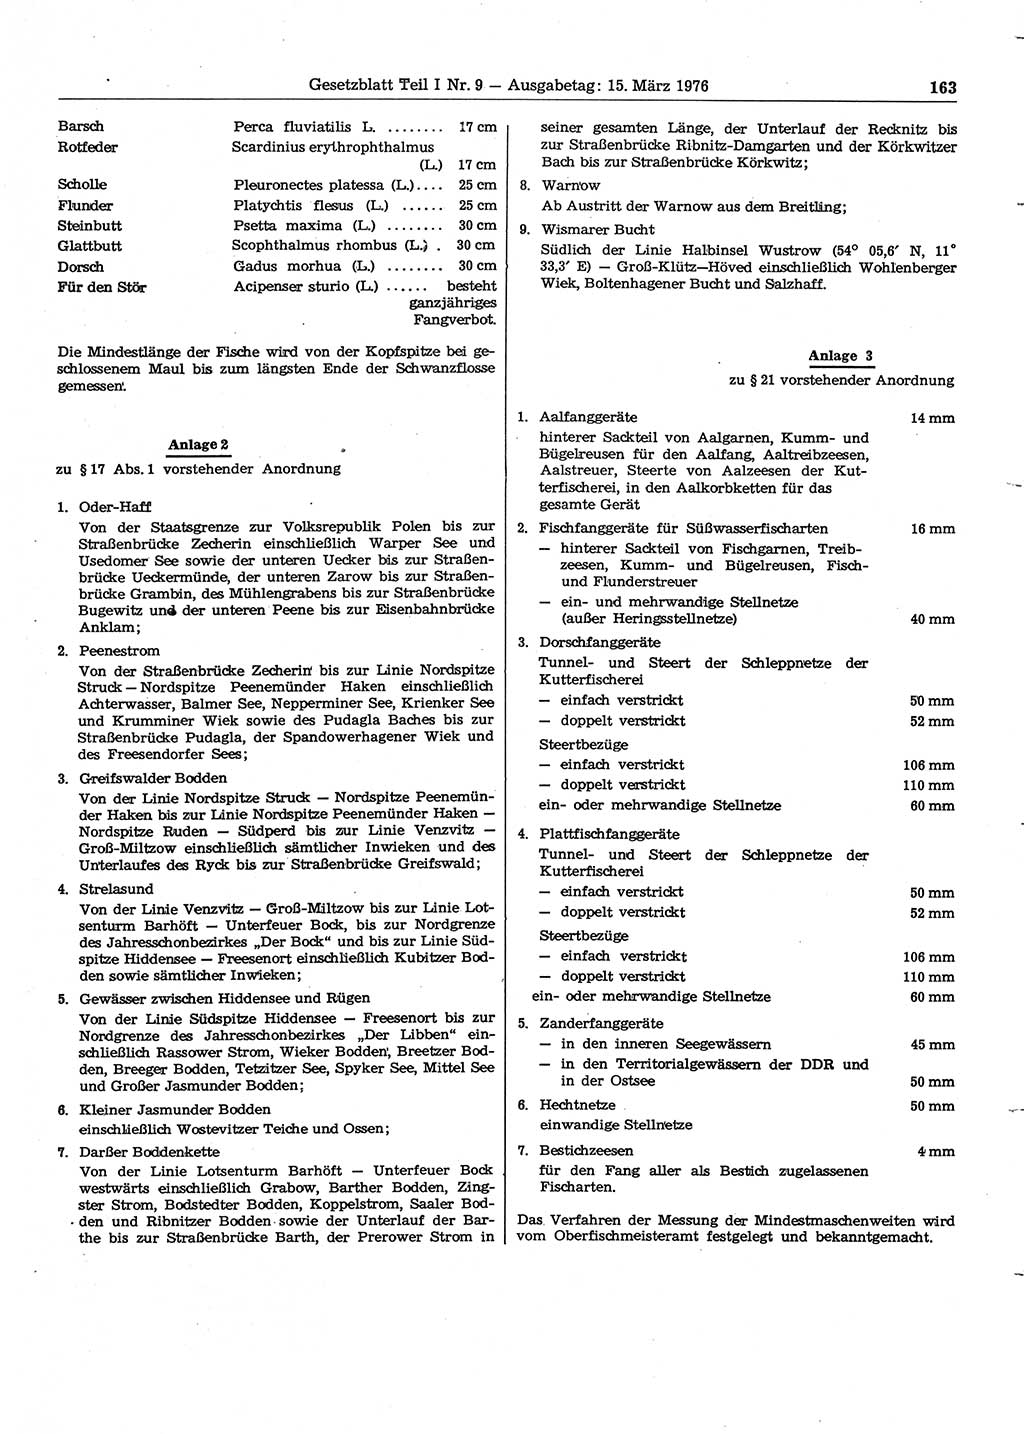 Gesetzblatt (GBl.) der Deutschen Demokratischen Republik (DDR) Teil Ⅰ 1976, Seite 163 (GBl. DDR Ⅰ 1976, S. 163)